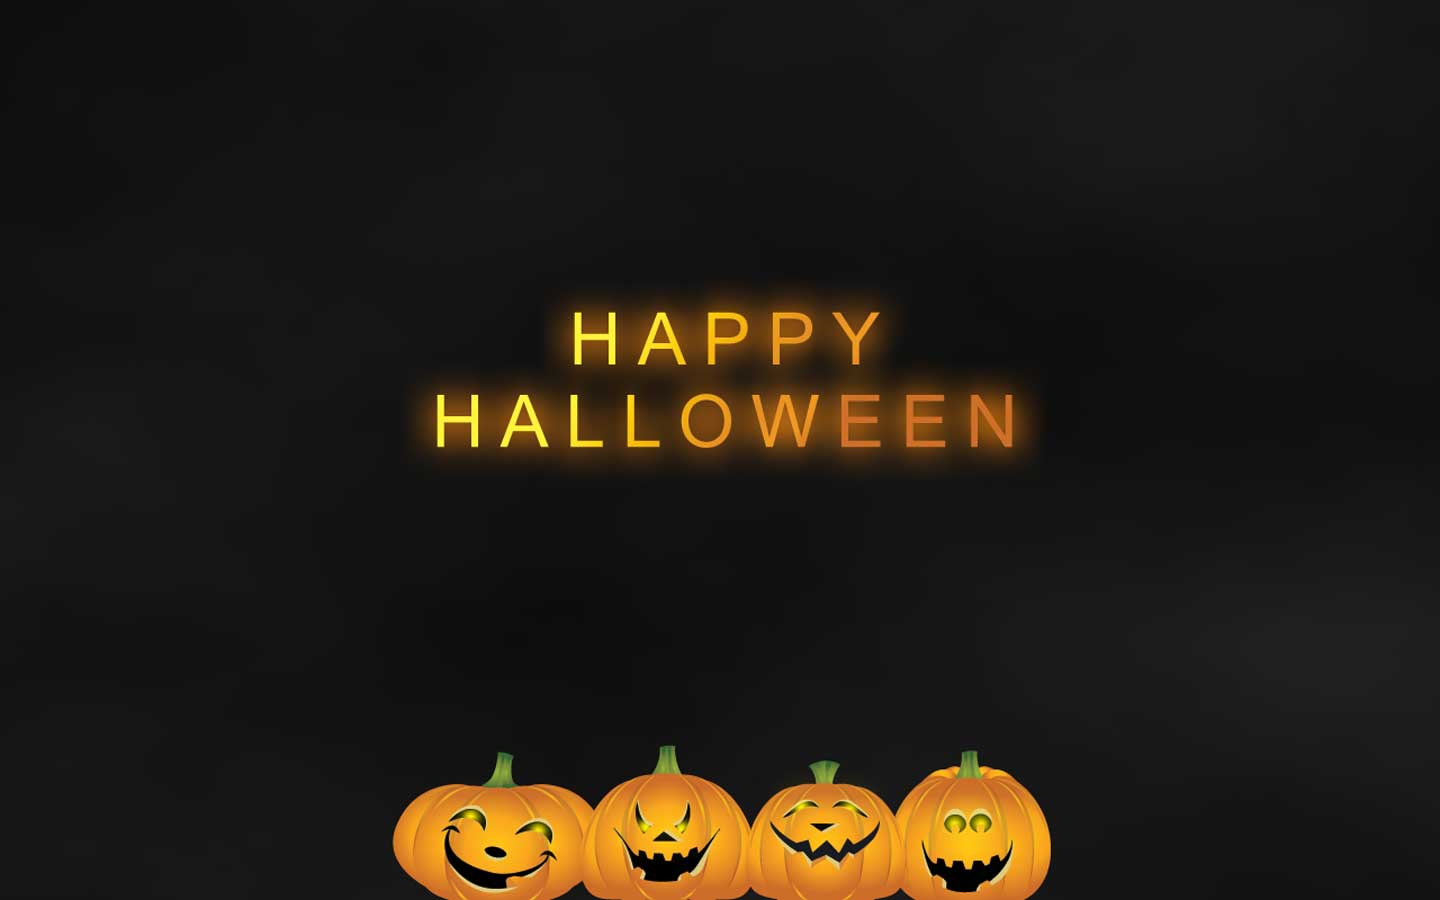 Happy Halloween Wallpaper Desktop, wallpaper, Happy Halloween